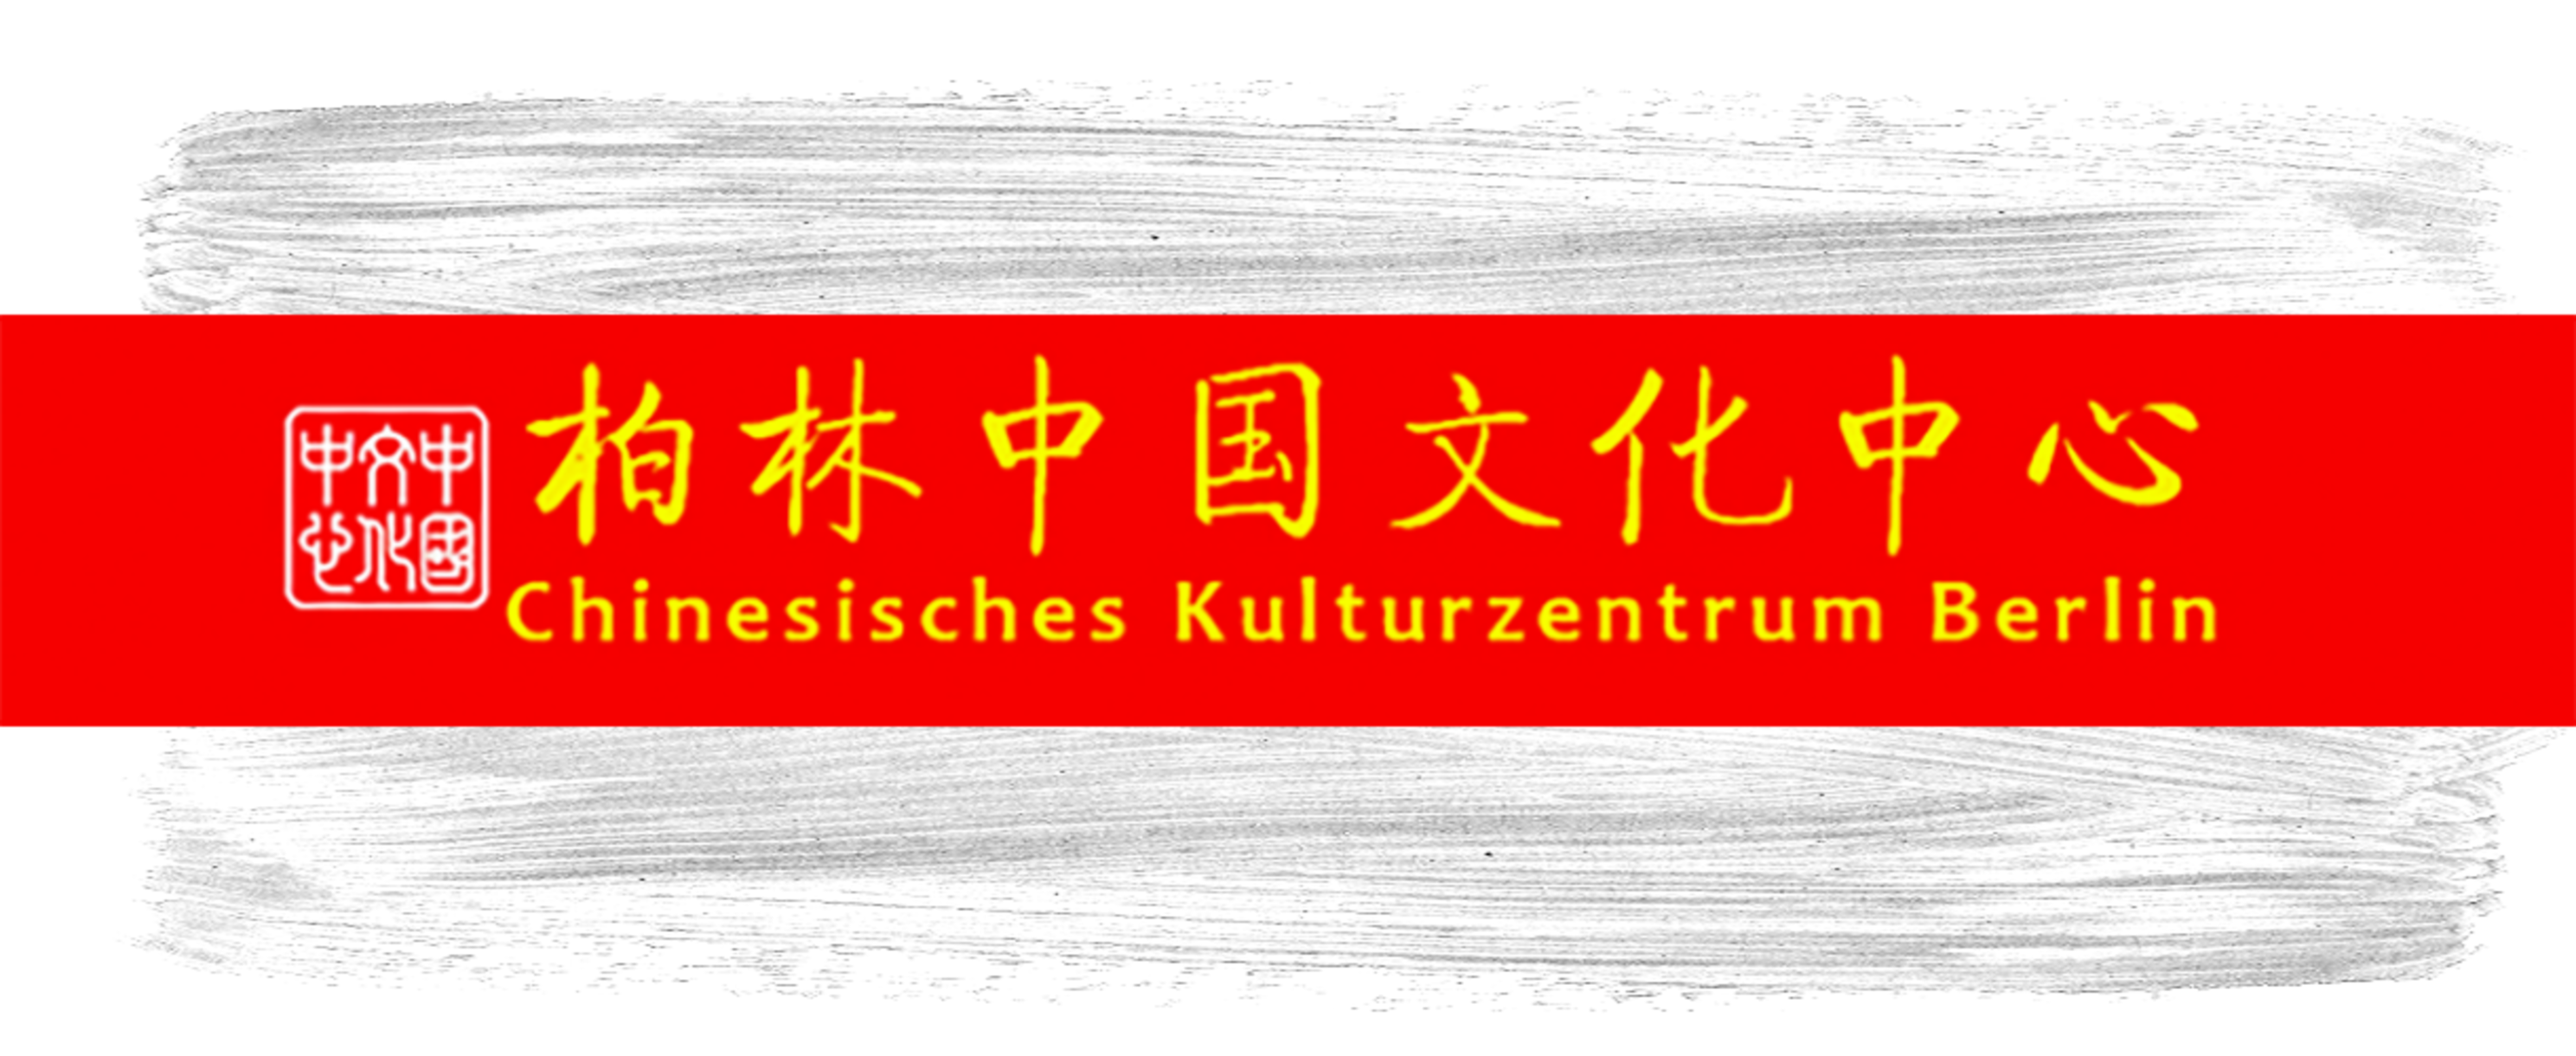 Chinesisches Kulturzentrum in Berlin